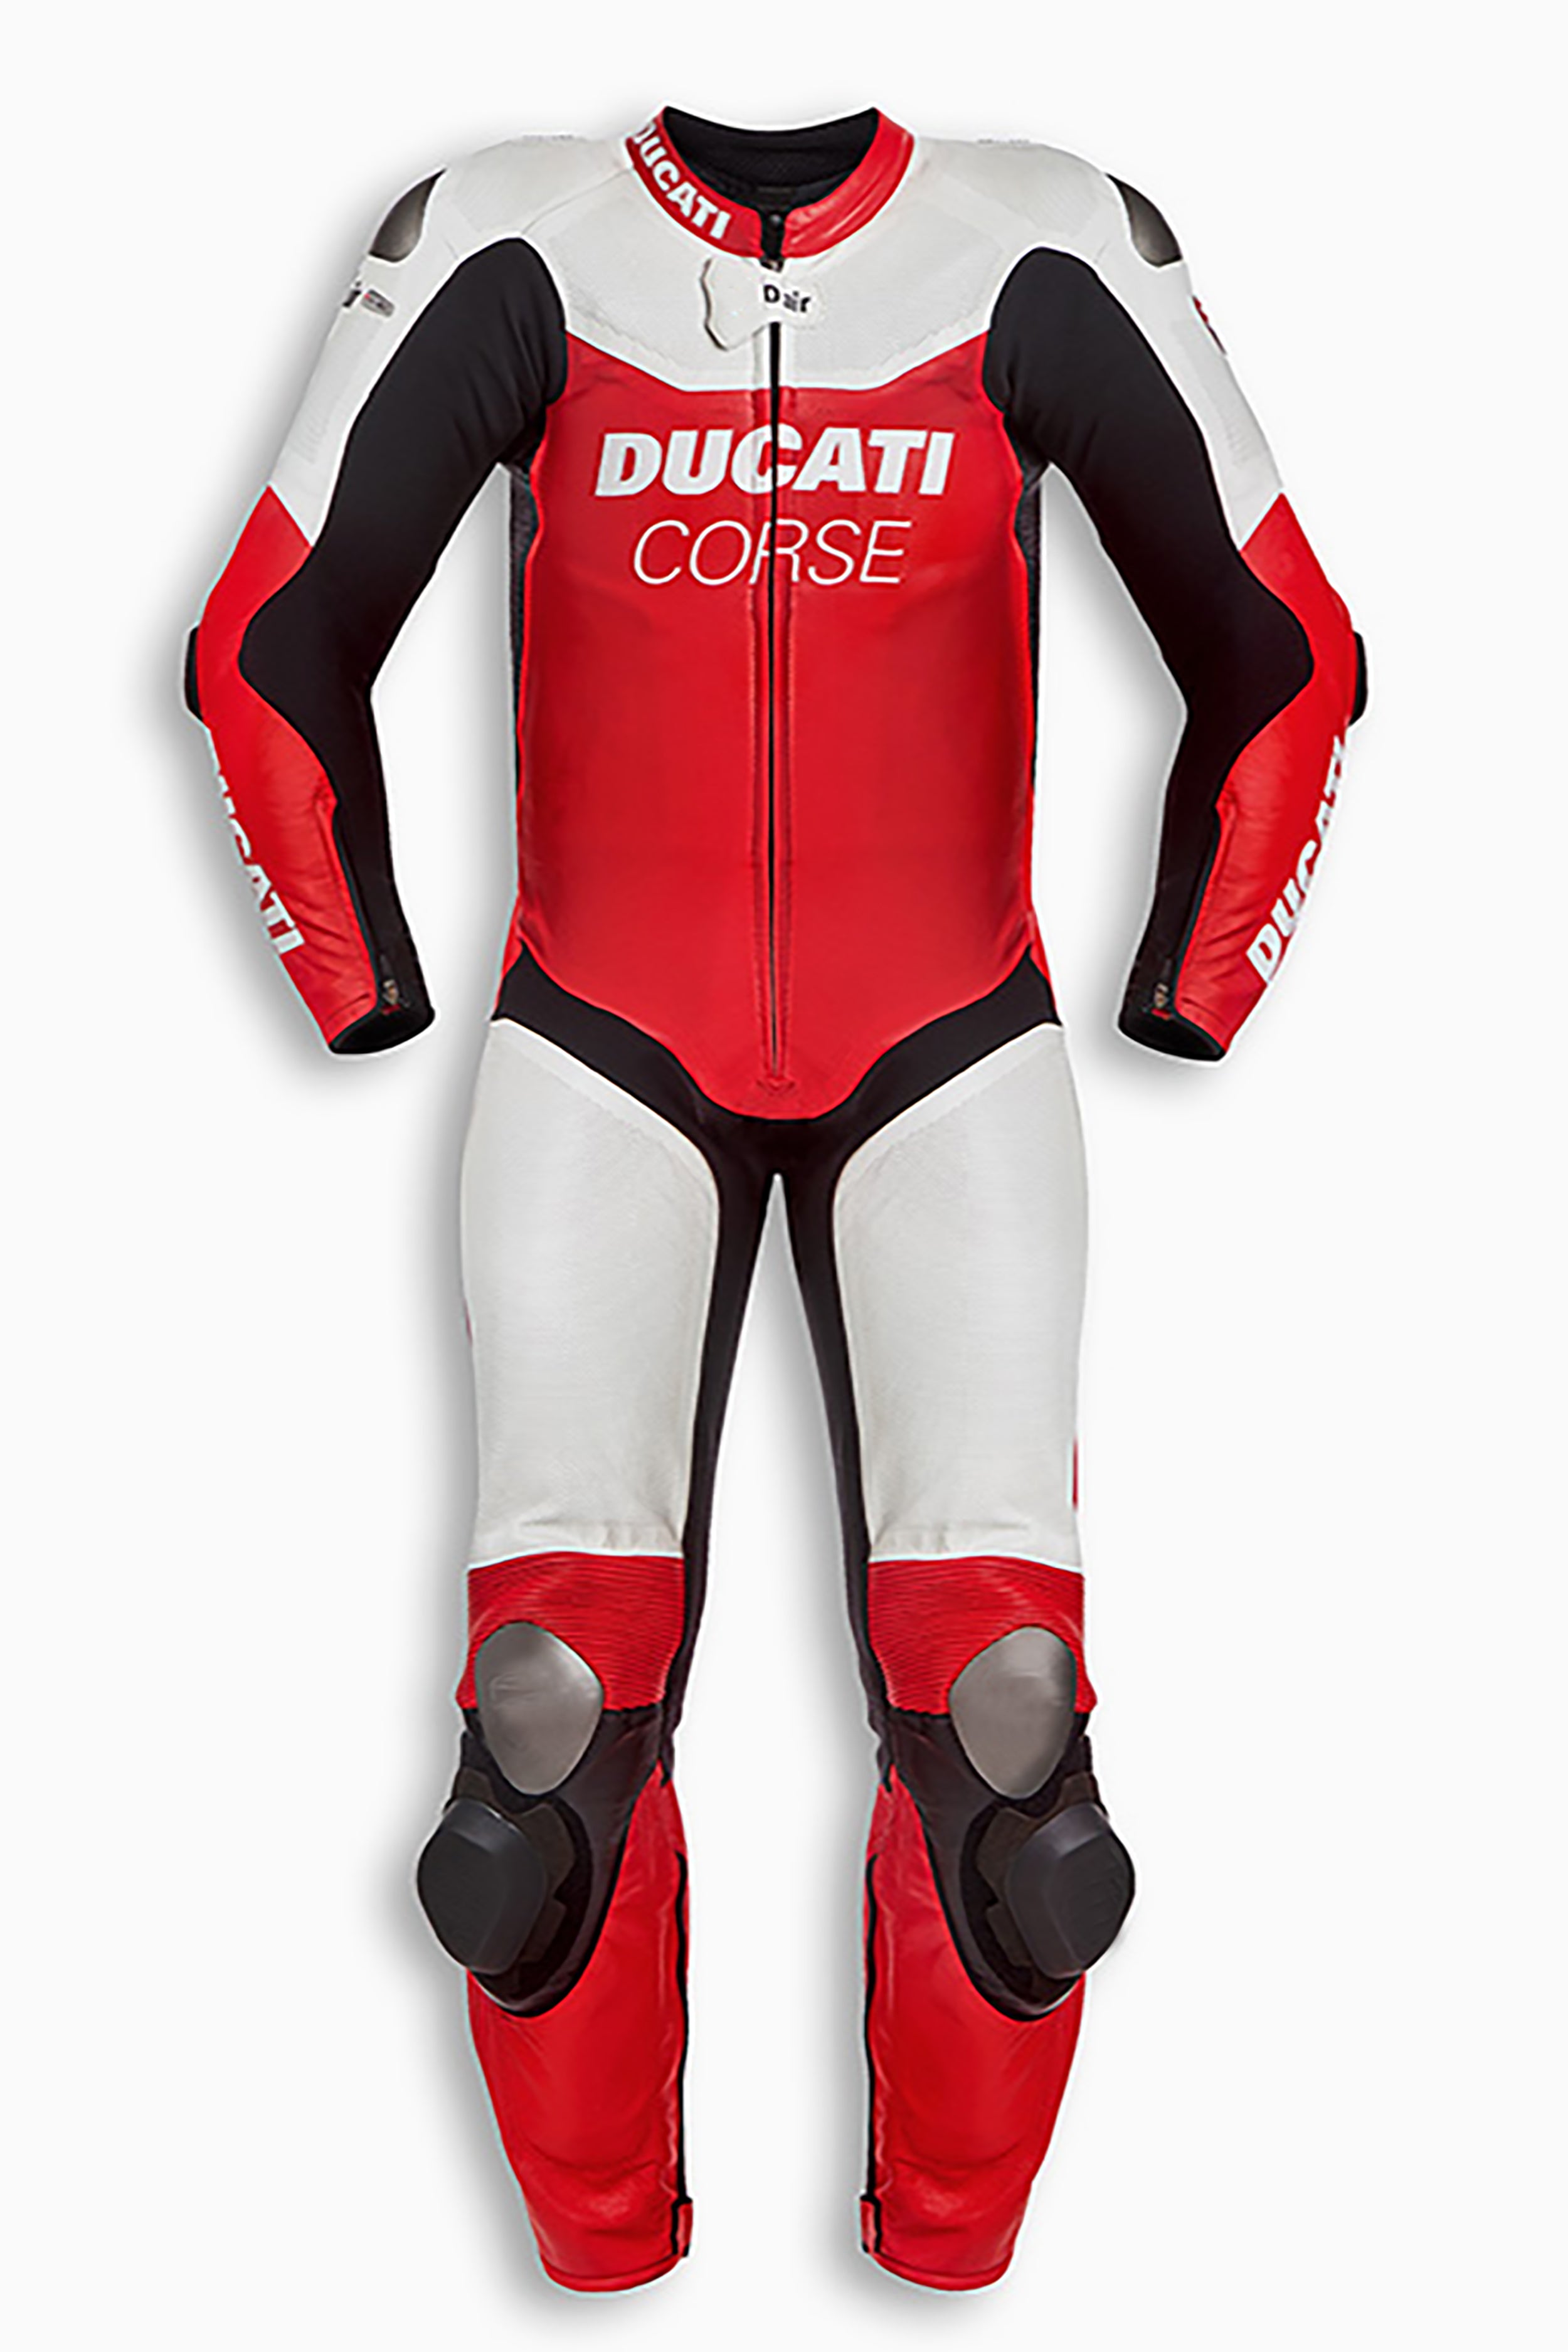 Ducati Corse DAir K1 Replica Men Motorbike Racing Leather Suit Front View